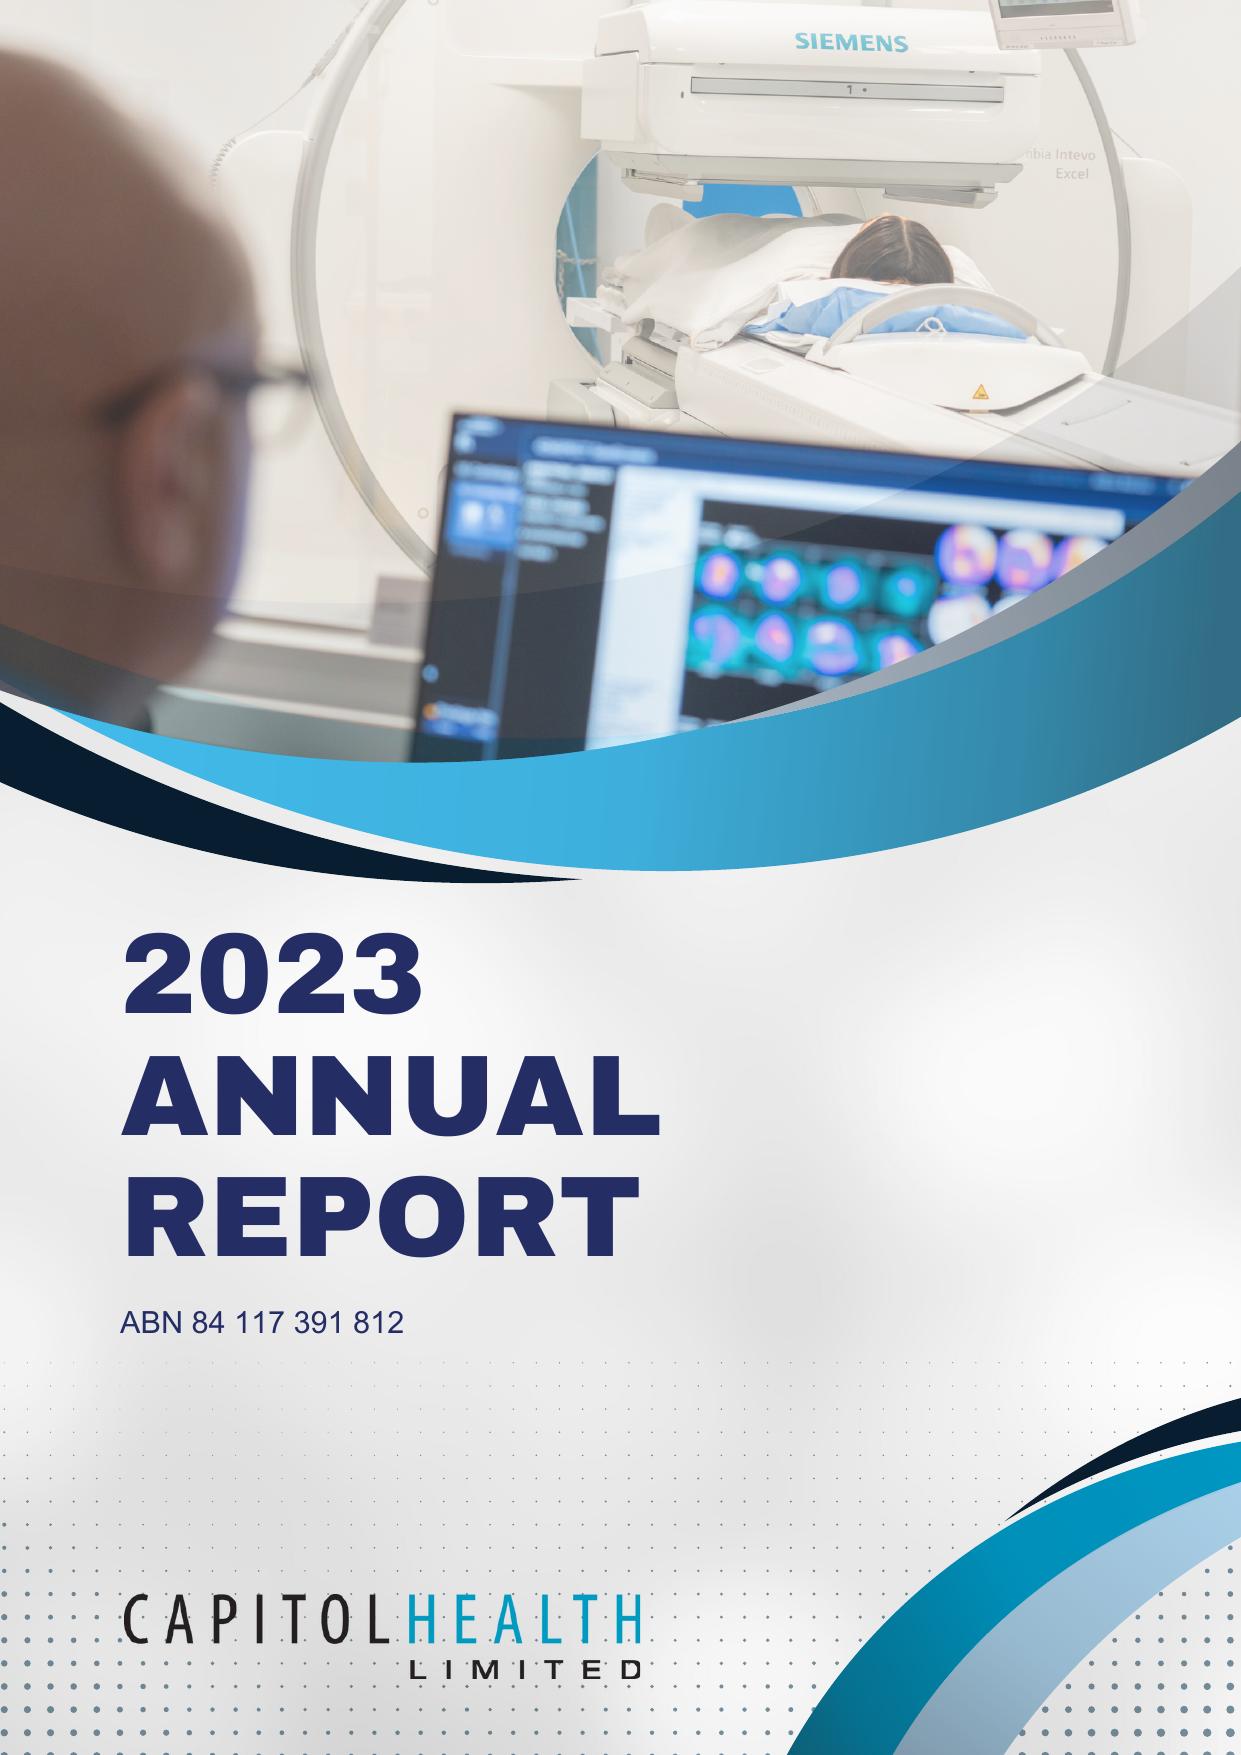 CAPITOLHEALTH 2023 Annual Report